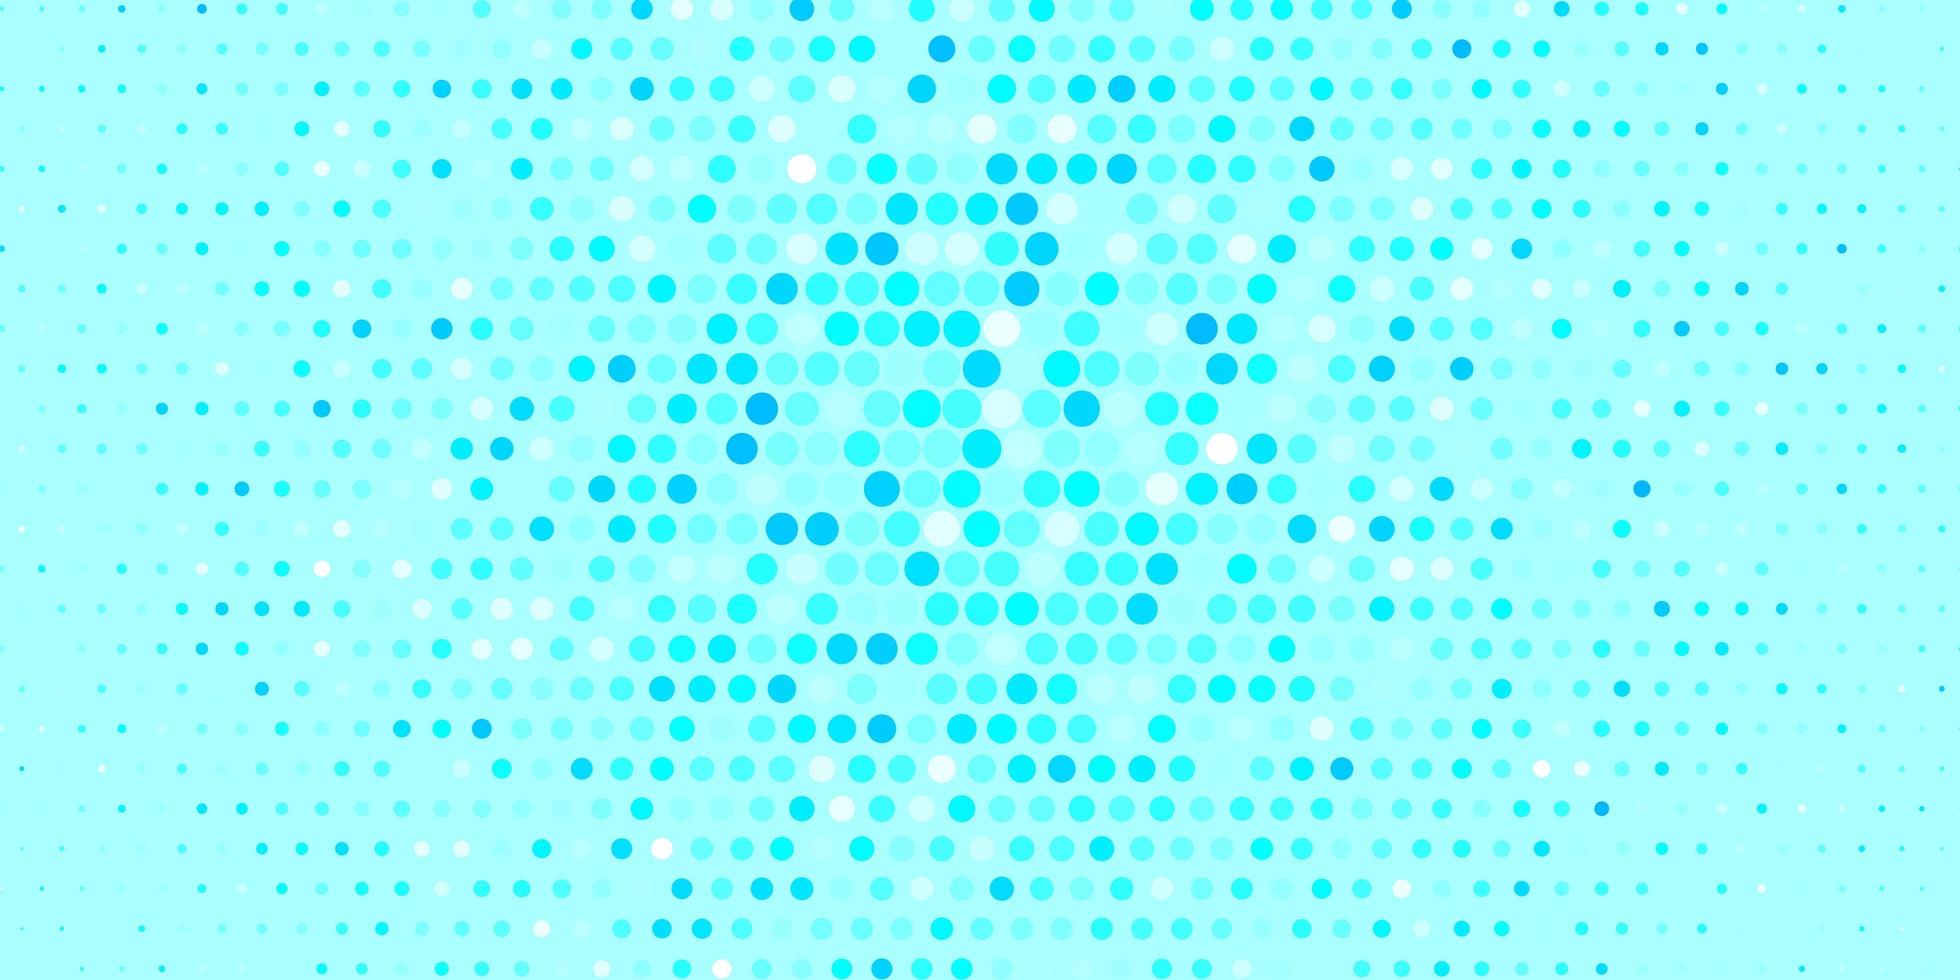 disposition de vecteur bleu clair, vert avec des formes de cercle. illustration avec ensemble de sphères abstraites colorées brillantes. modèle pour livrets, dépliants.